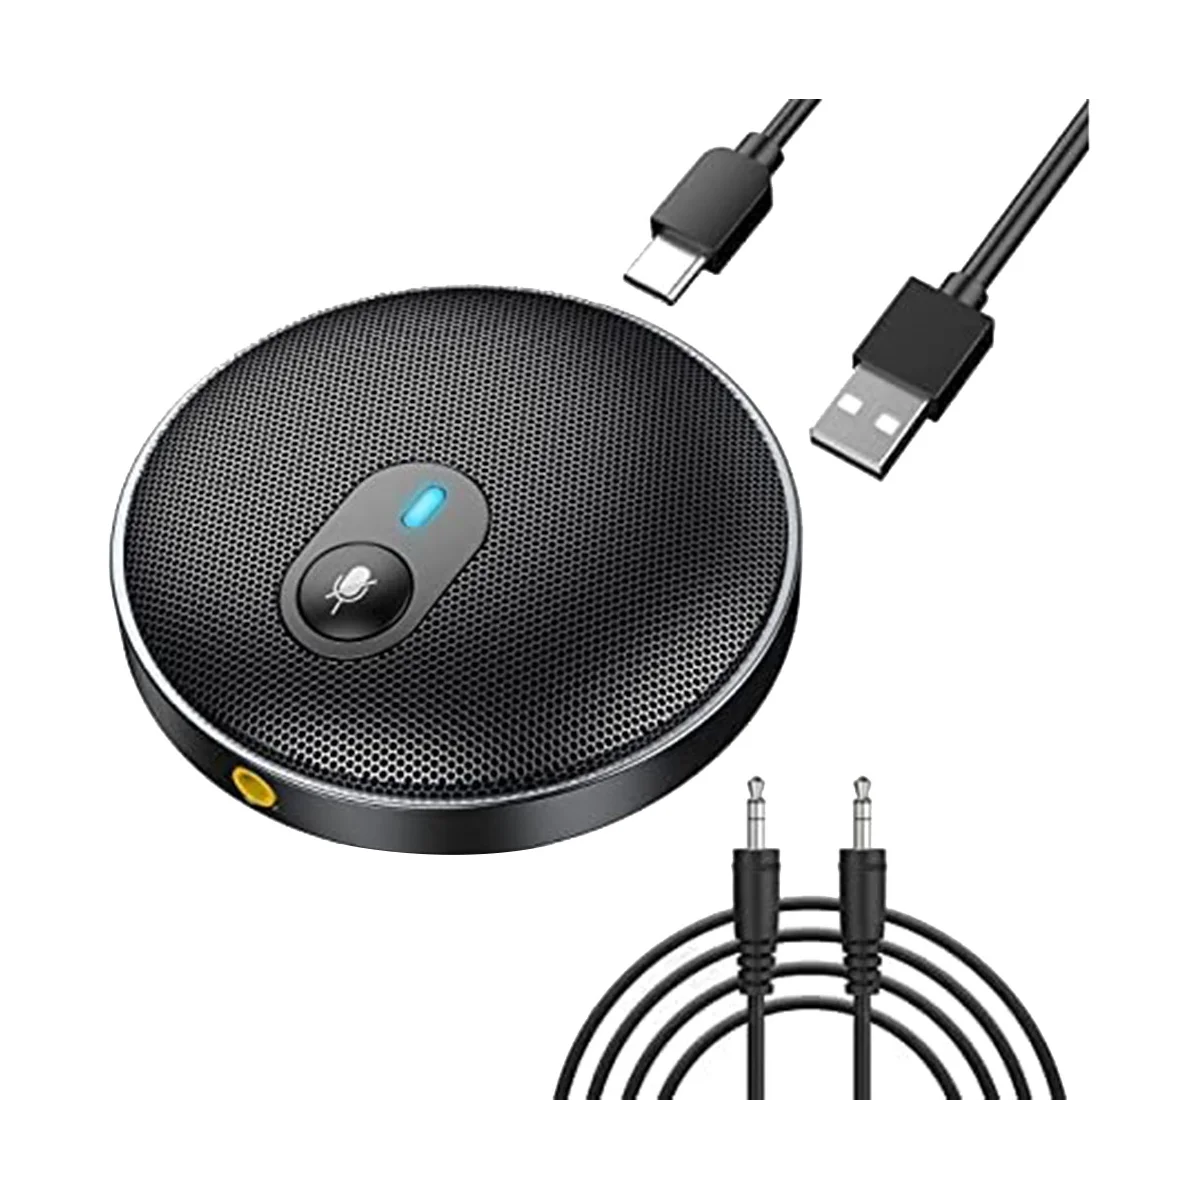 

Микрофон для видеоконференций 360 °, Круглый микрофон для конференц-связи с голосовым распознаванием для Windows 7/8/10, OS, Linux